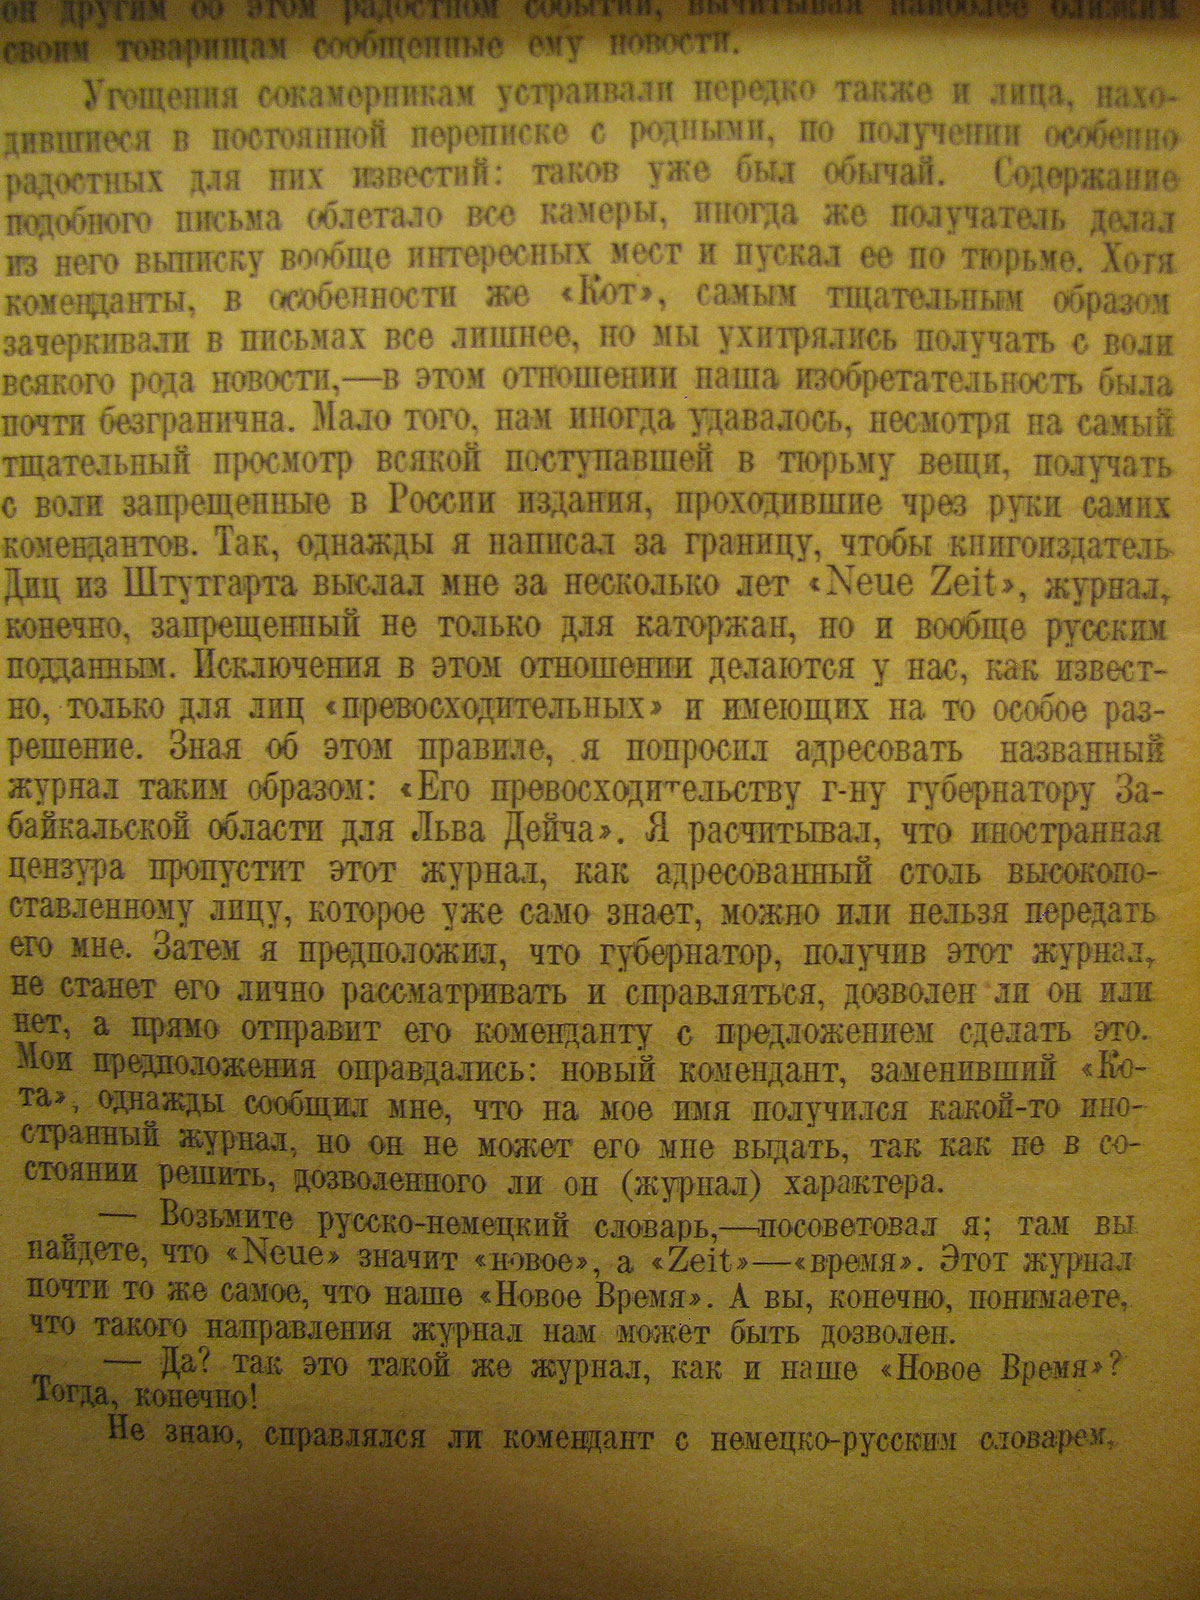 Дейч Л.Г. 16 лет в Сибири. М., 1924. С. 164.